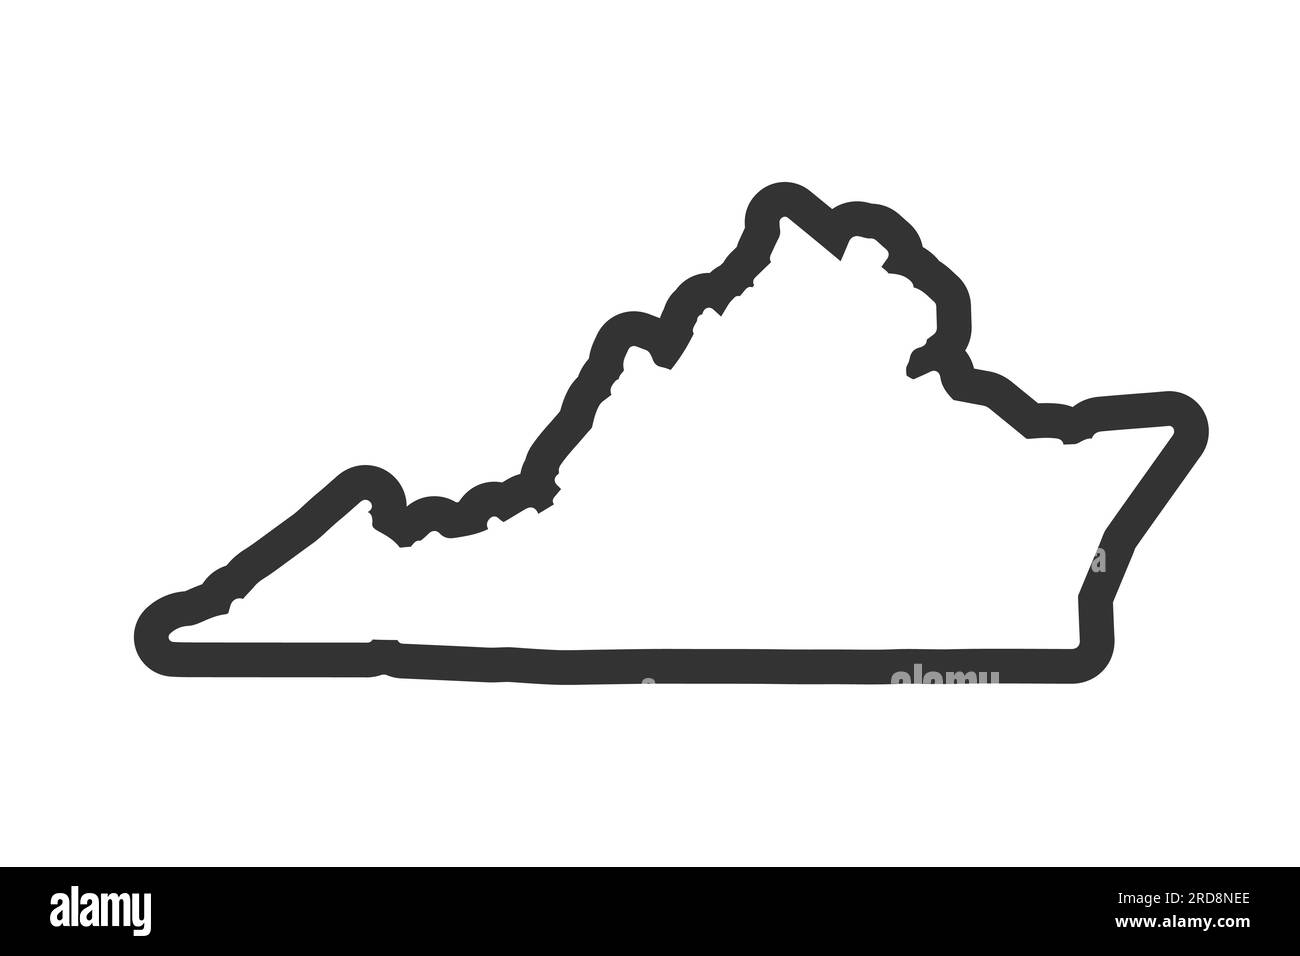 Mappa dello stato della Virginia. Mappa dello stato DEGLI STATI UNITI. Simbolo del contorno della Virginia. Illustrazione vettoriale Illustrazione Vettoriale